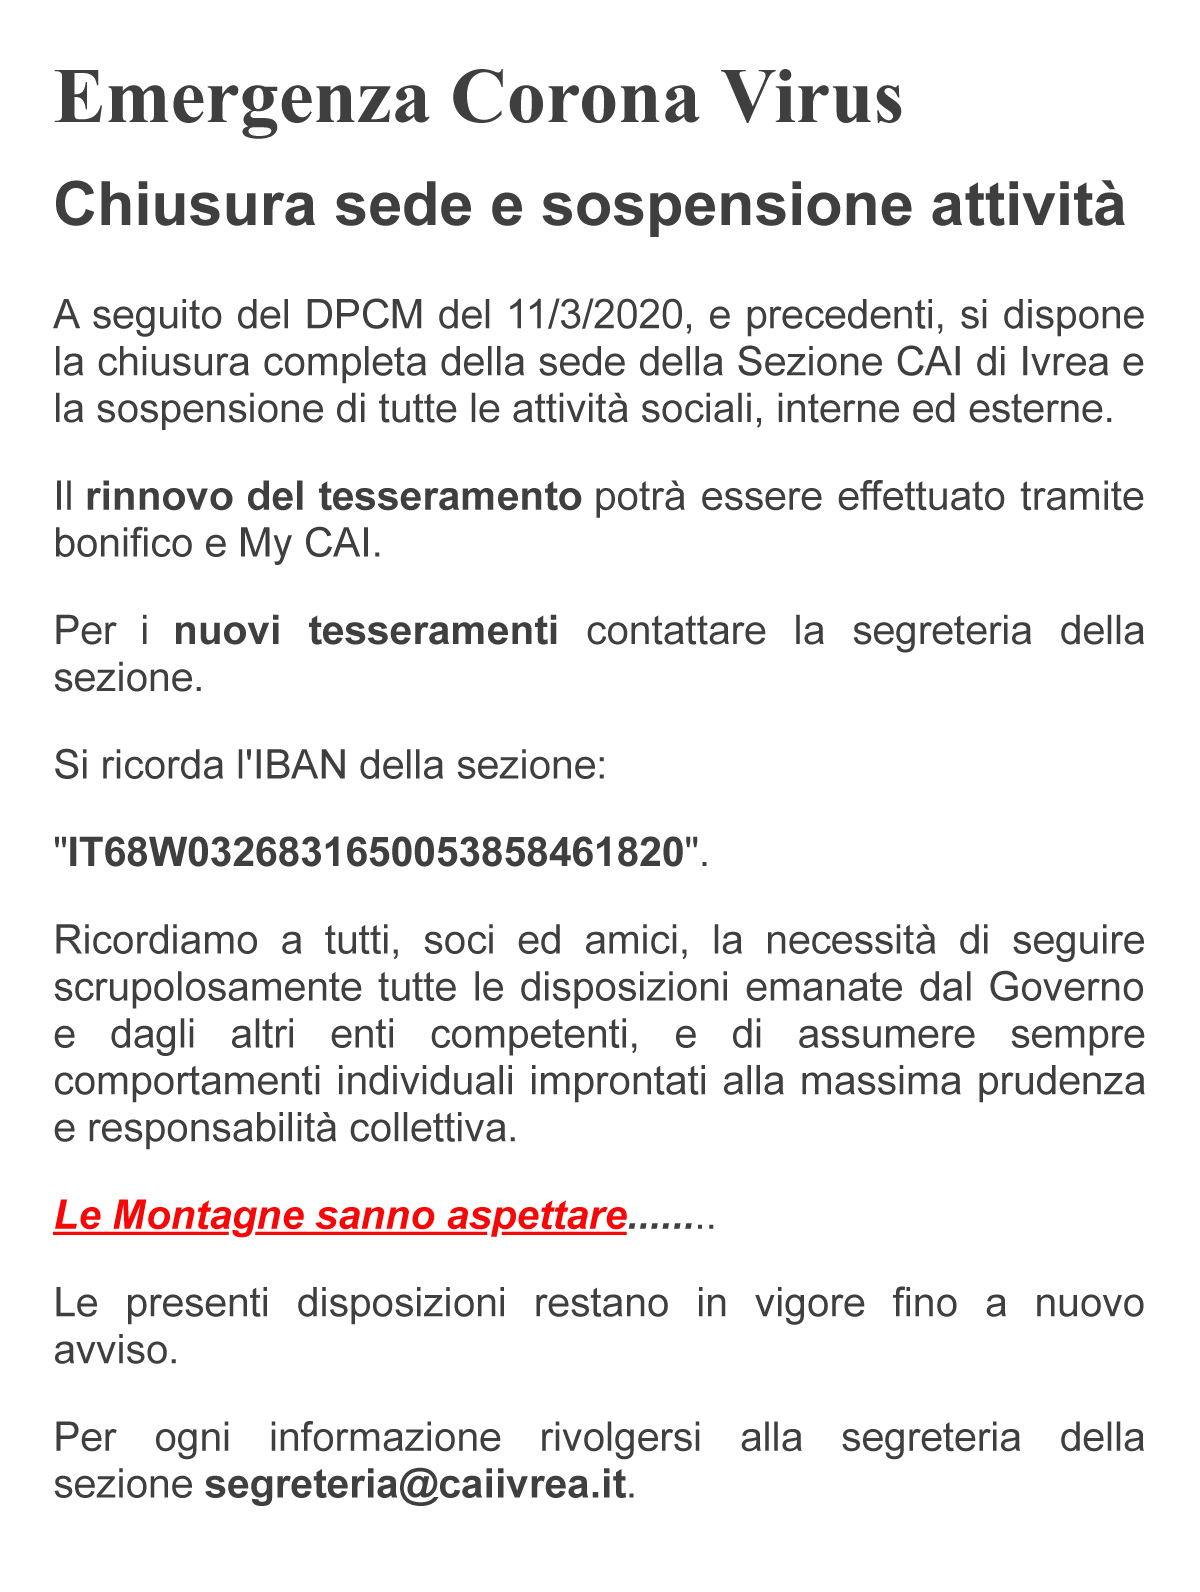 Chiusura_sede_Sezione_CAI_di_Ivrea_e_sospensione_attività.jpg